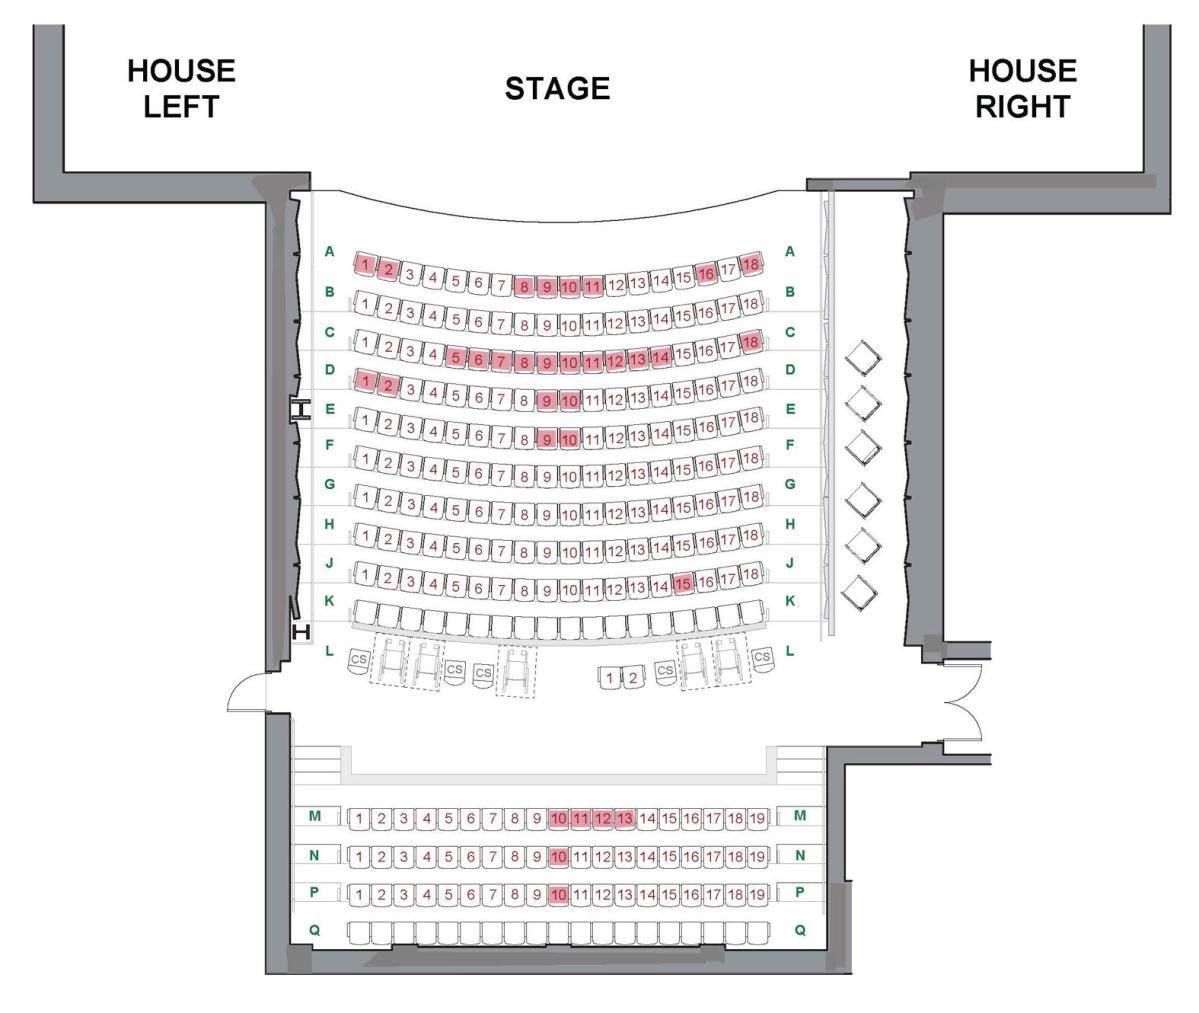 Theatre seating diagram